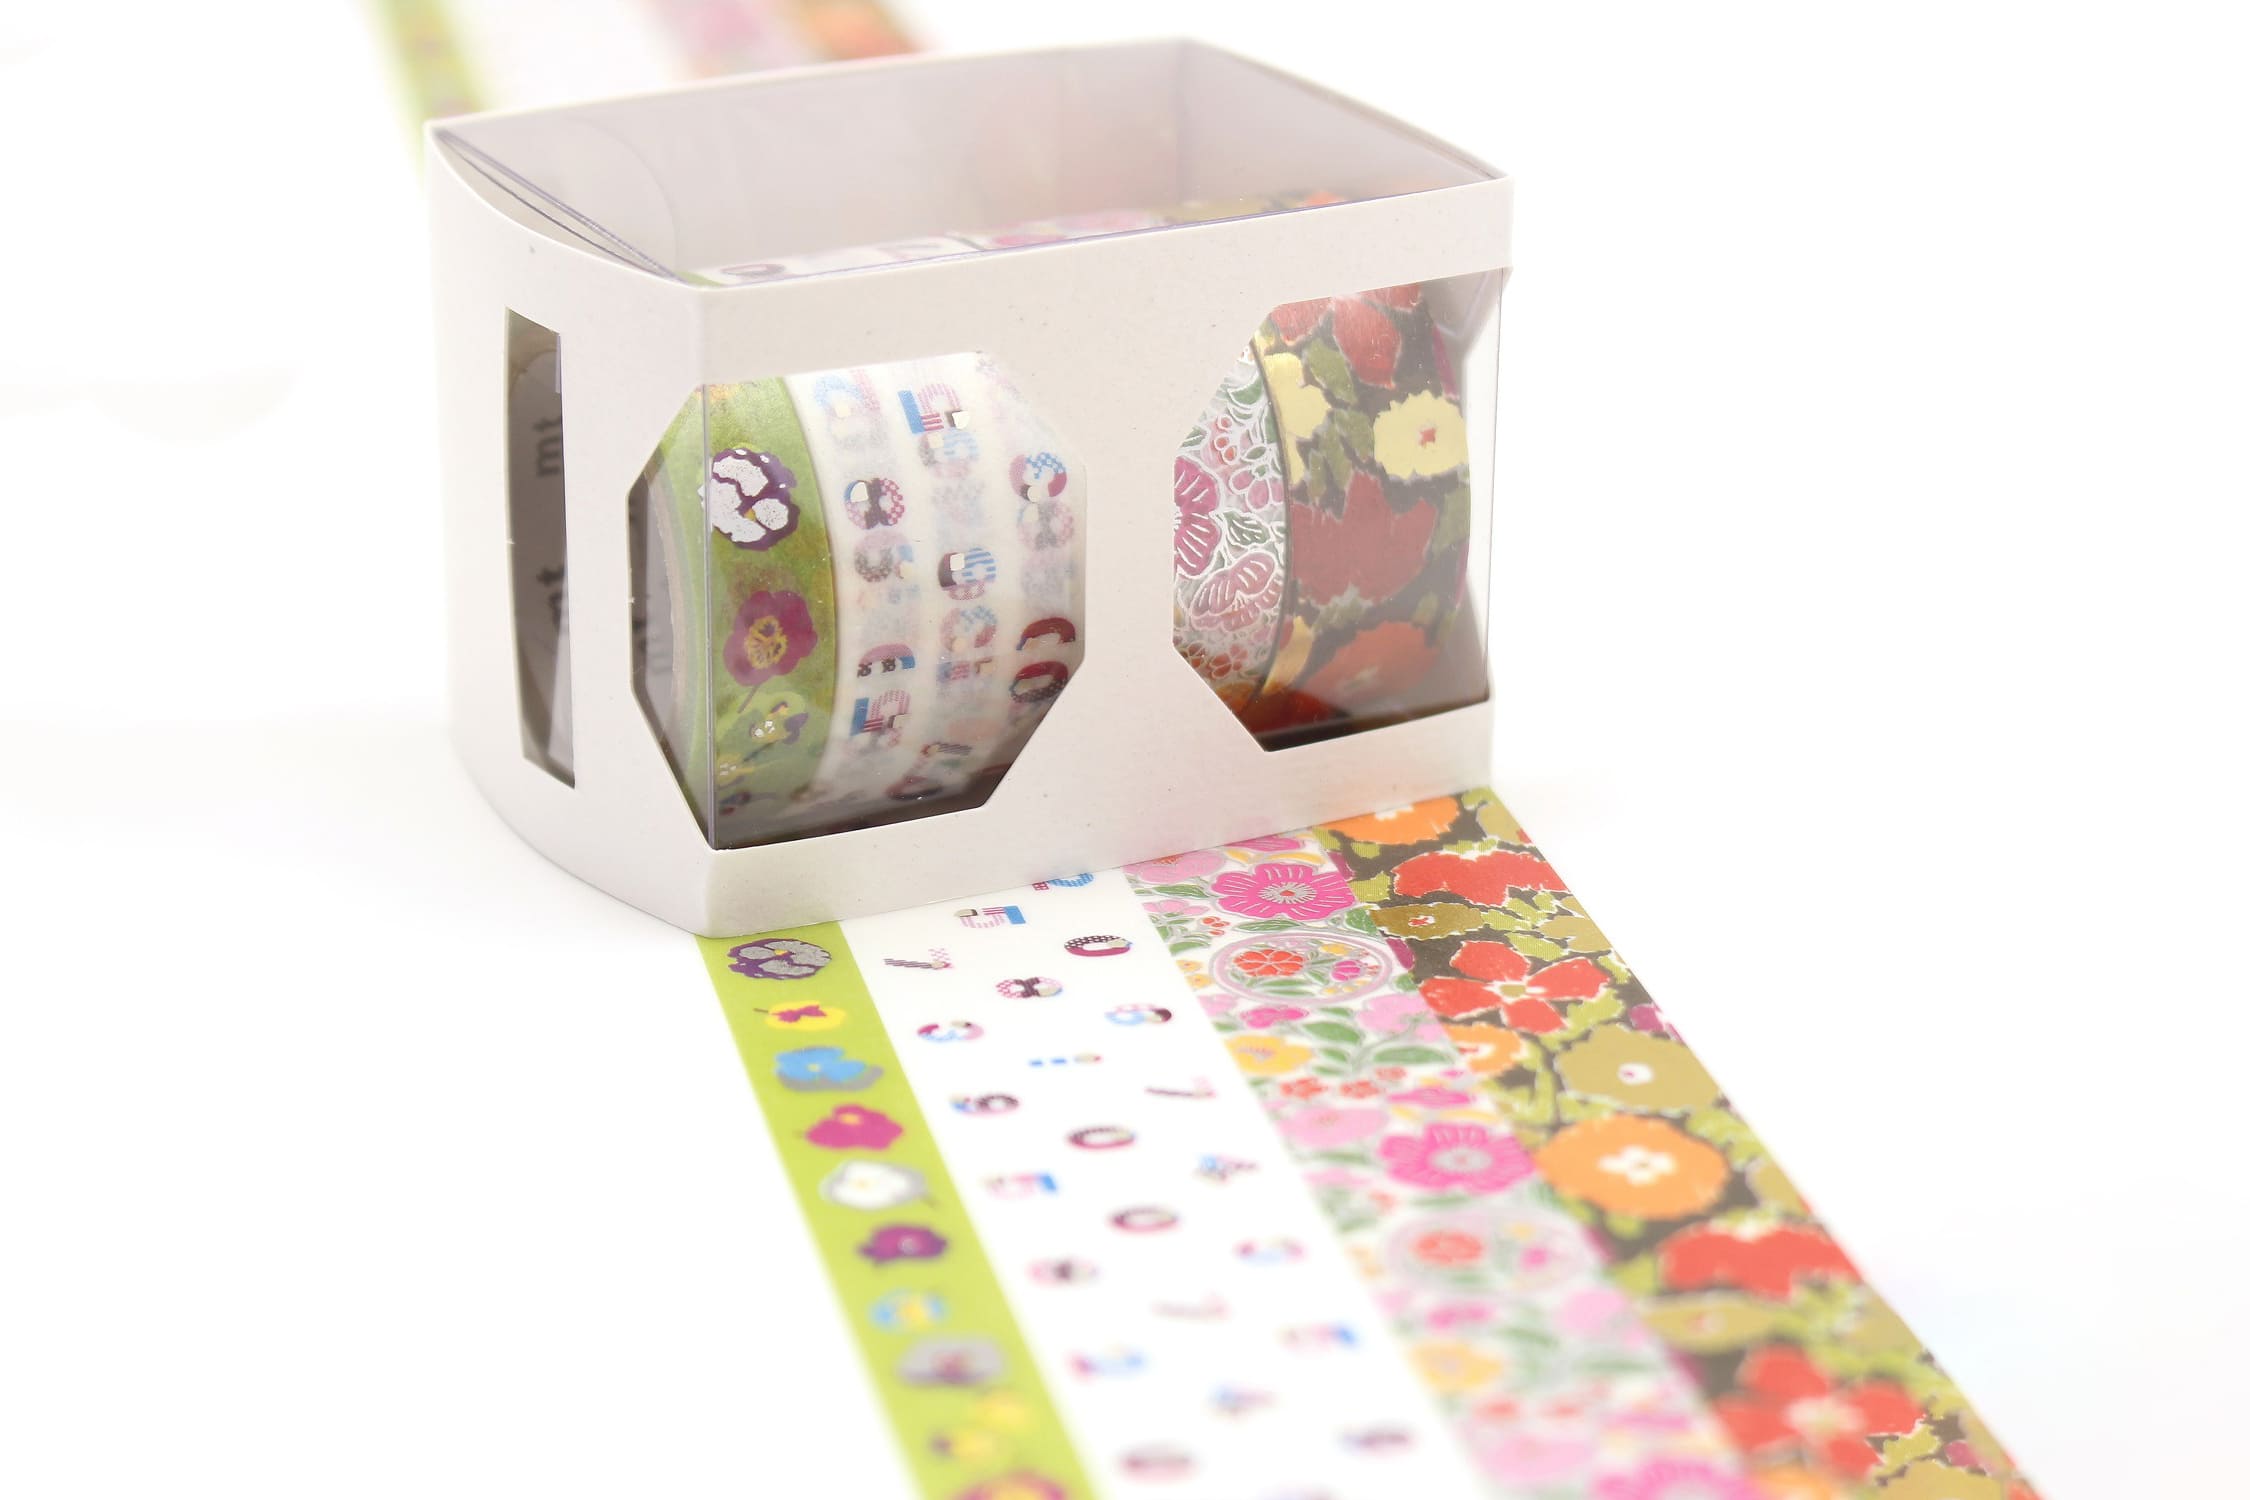 mt Gift Box set of 4 - SOU.SOU 100th Anniversary Set - Washi Tape